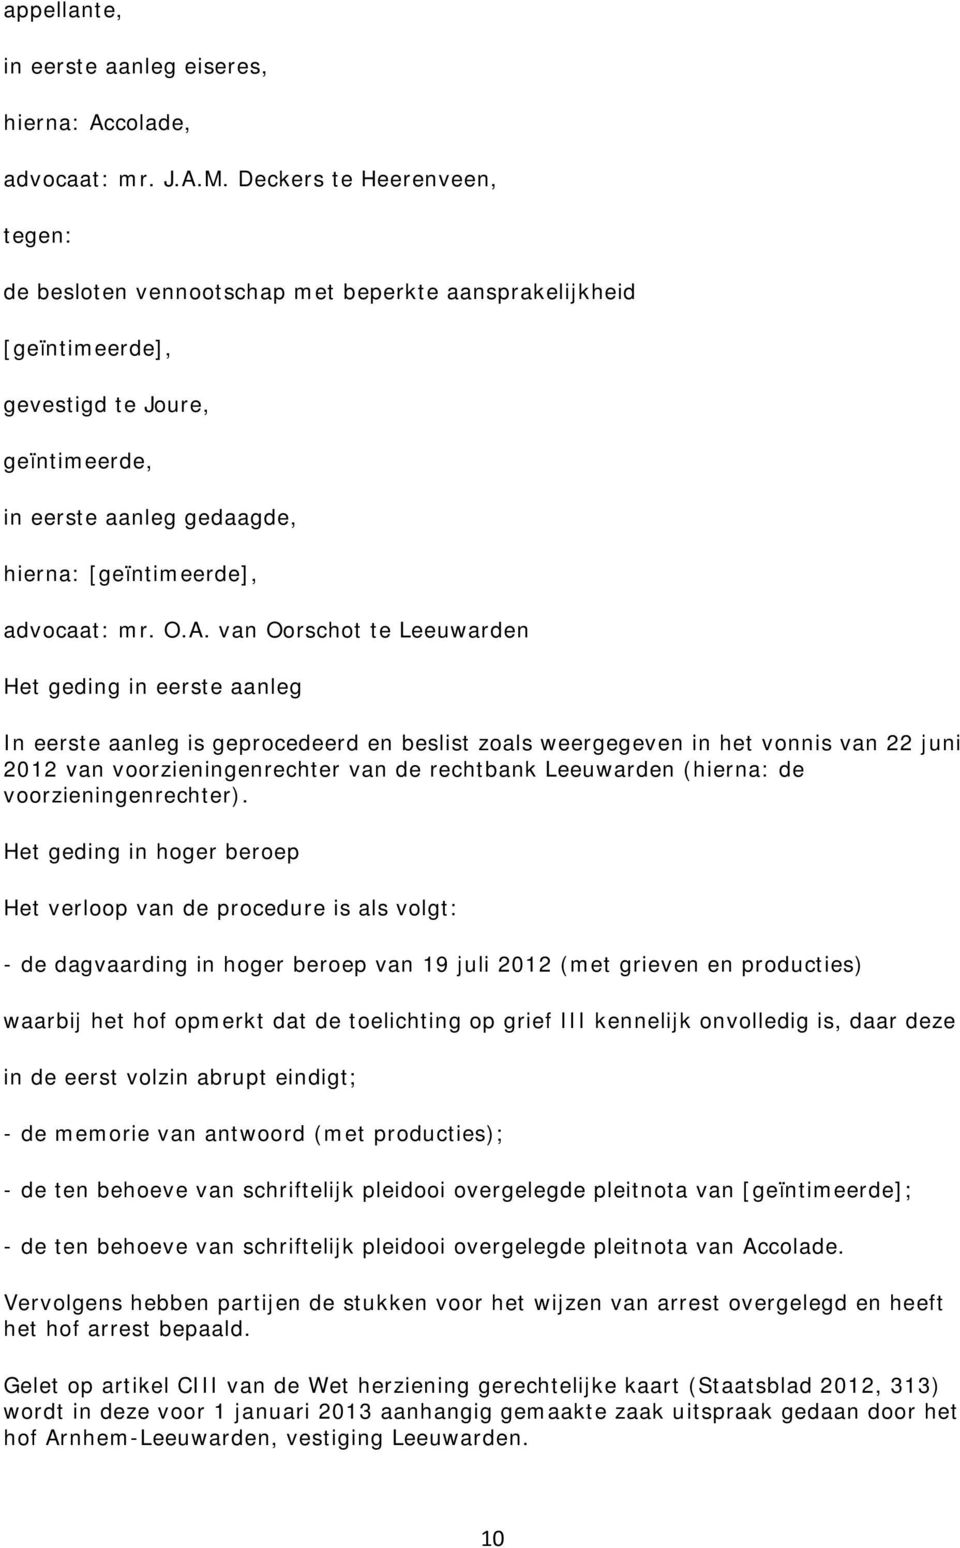 O.A. van Oorschot te Leeuwarden Het geding in eerste aanleg In eerste aanleg is geprocedeerd en beslist zoals weergegeven in het vonnis van 22 juni 2012 van voorzieningenrechter van de rechtbank